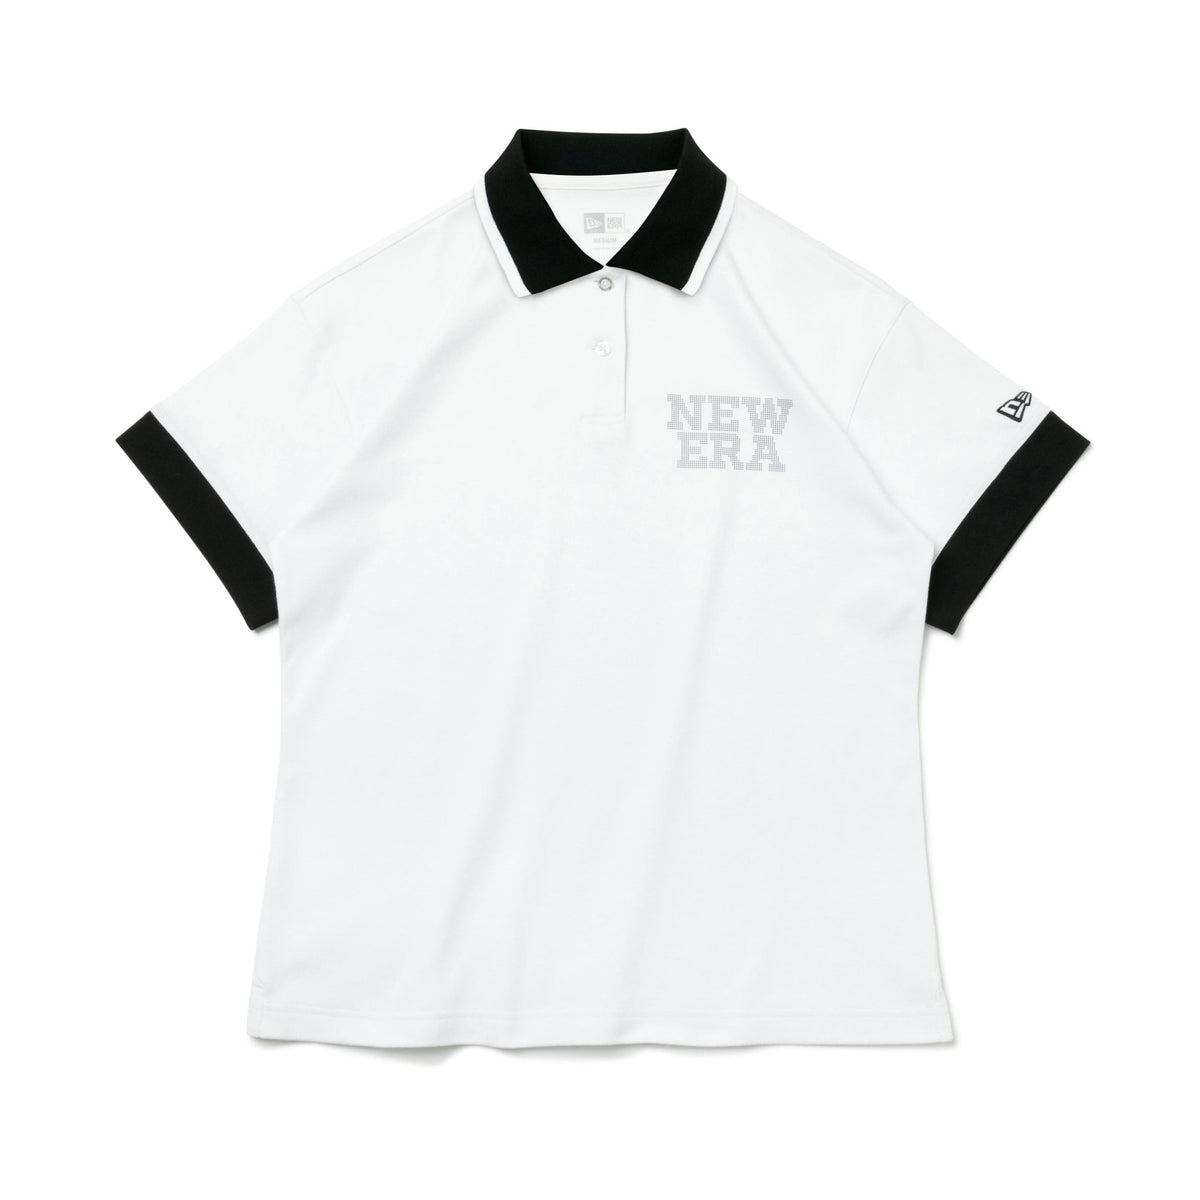 【ゴルフ】 WOMEN'S 半袖 ポロシャツ Dot NEW ERA ホワイト